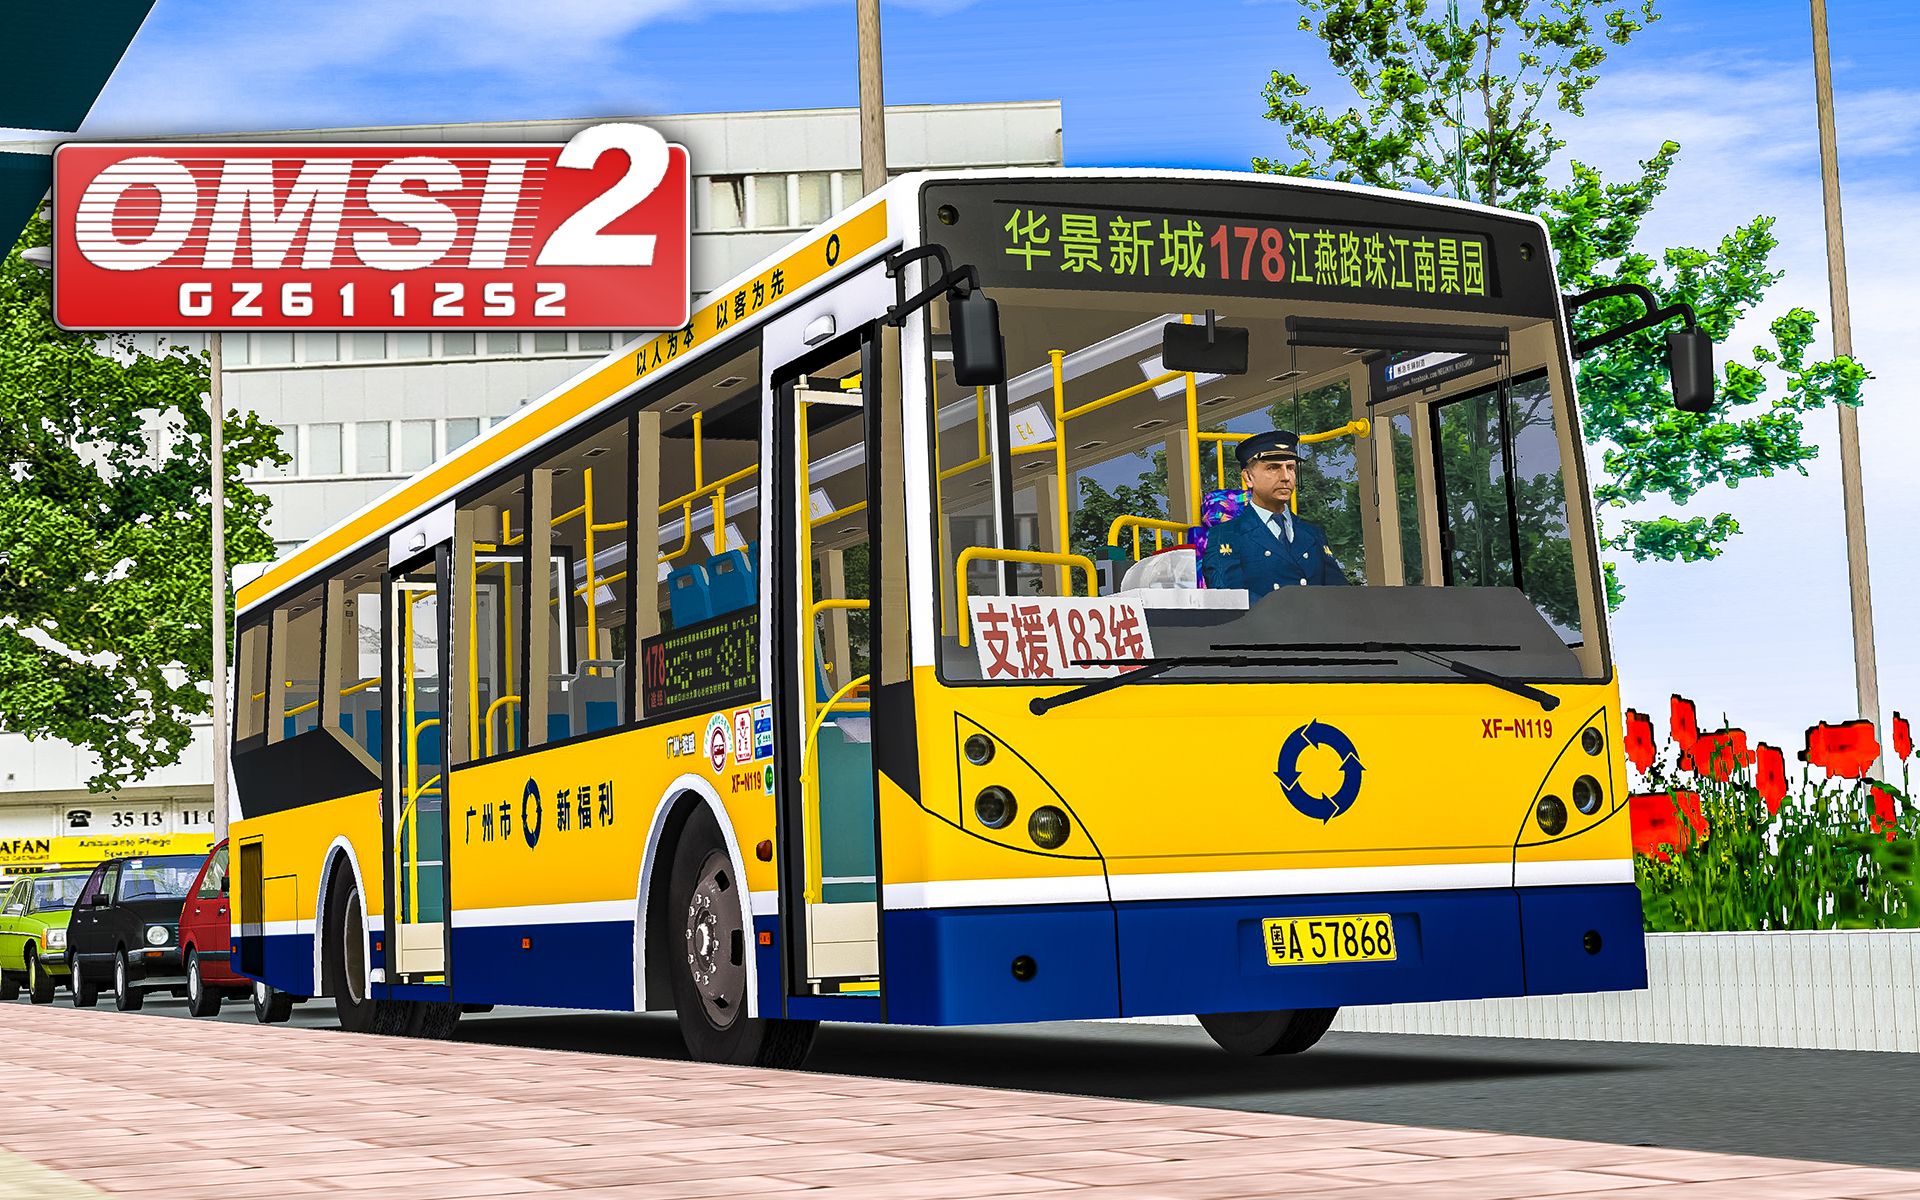 巴士模拟2 GZ6112 #3：打开实时公交和现实中的公交车竞速| OMSI 2 广佛 